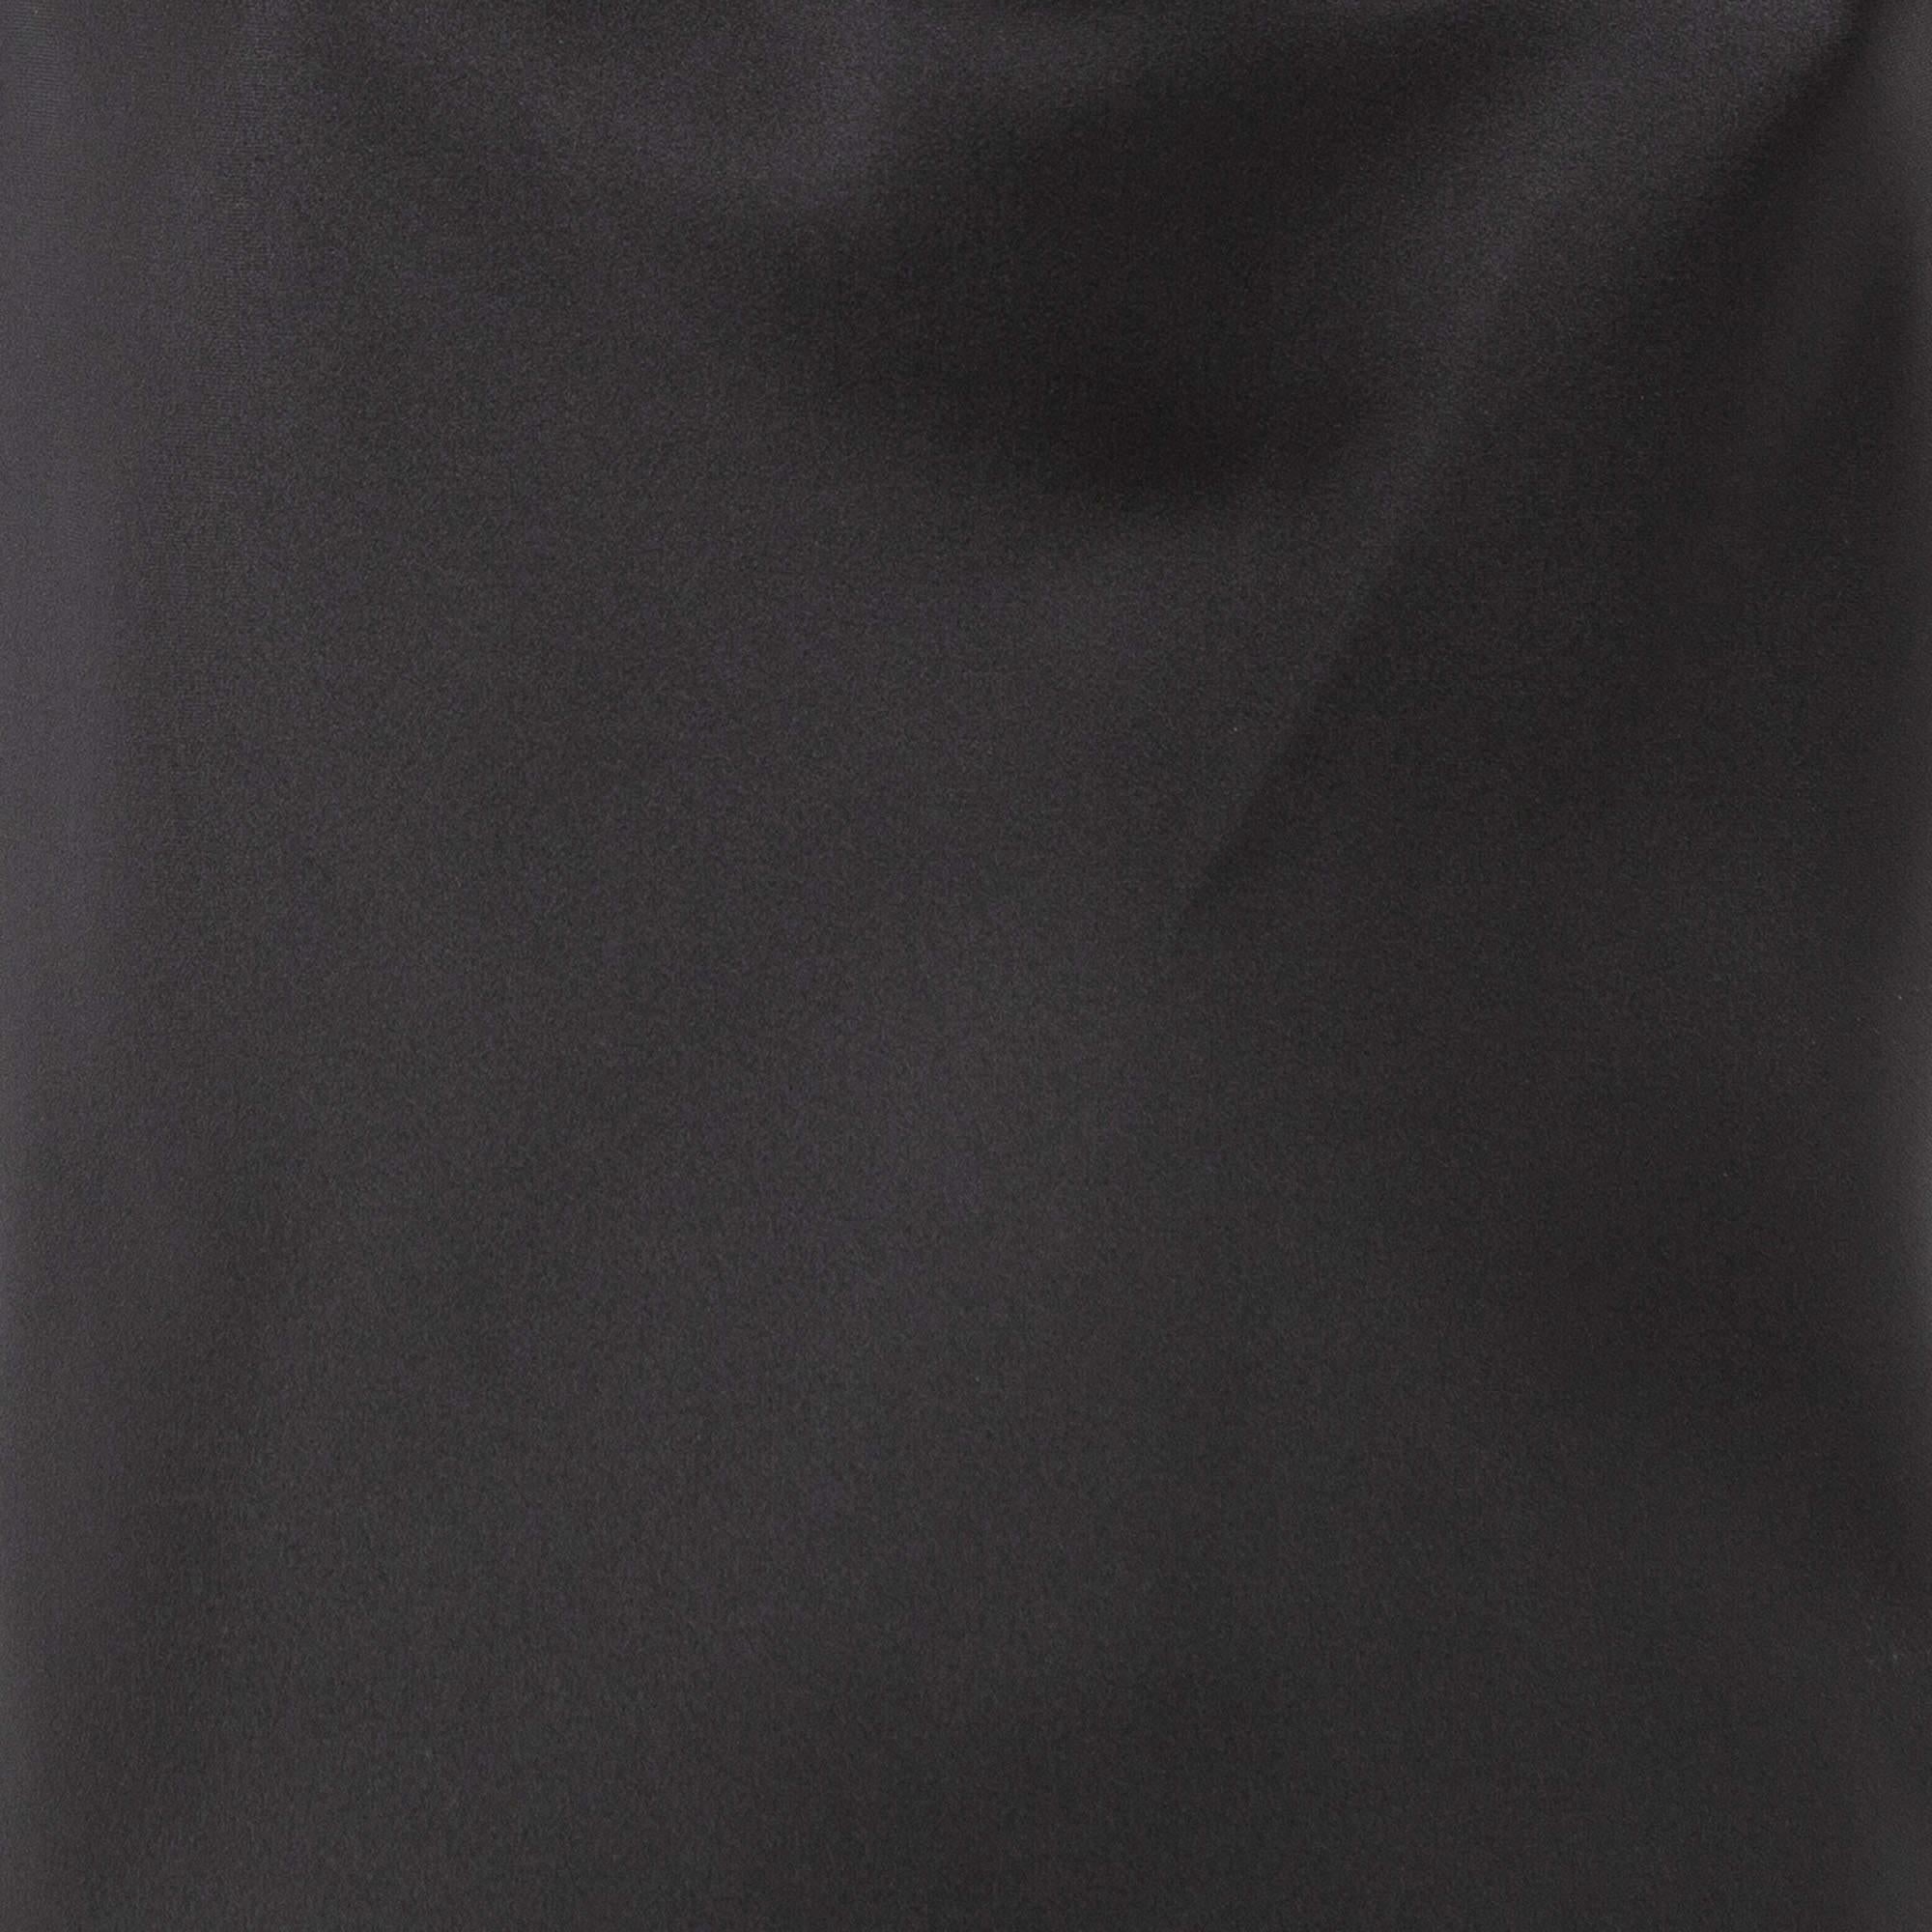 Norma Kamali Black Satin Cowl Neck Mini Dress L In Excellent Condition For Sale In Dubai, Al Qouz 2